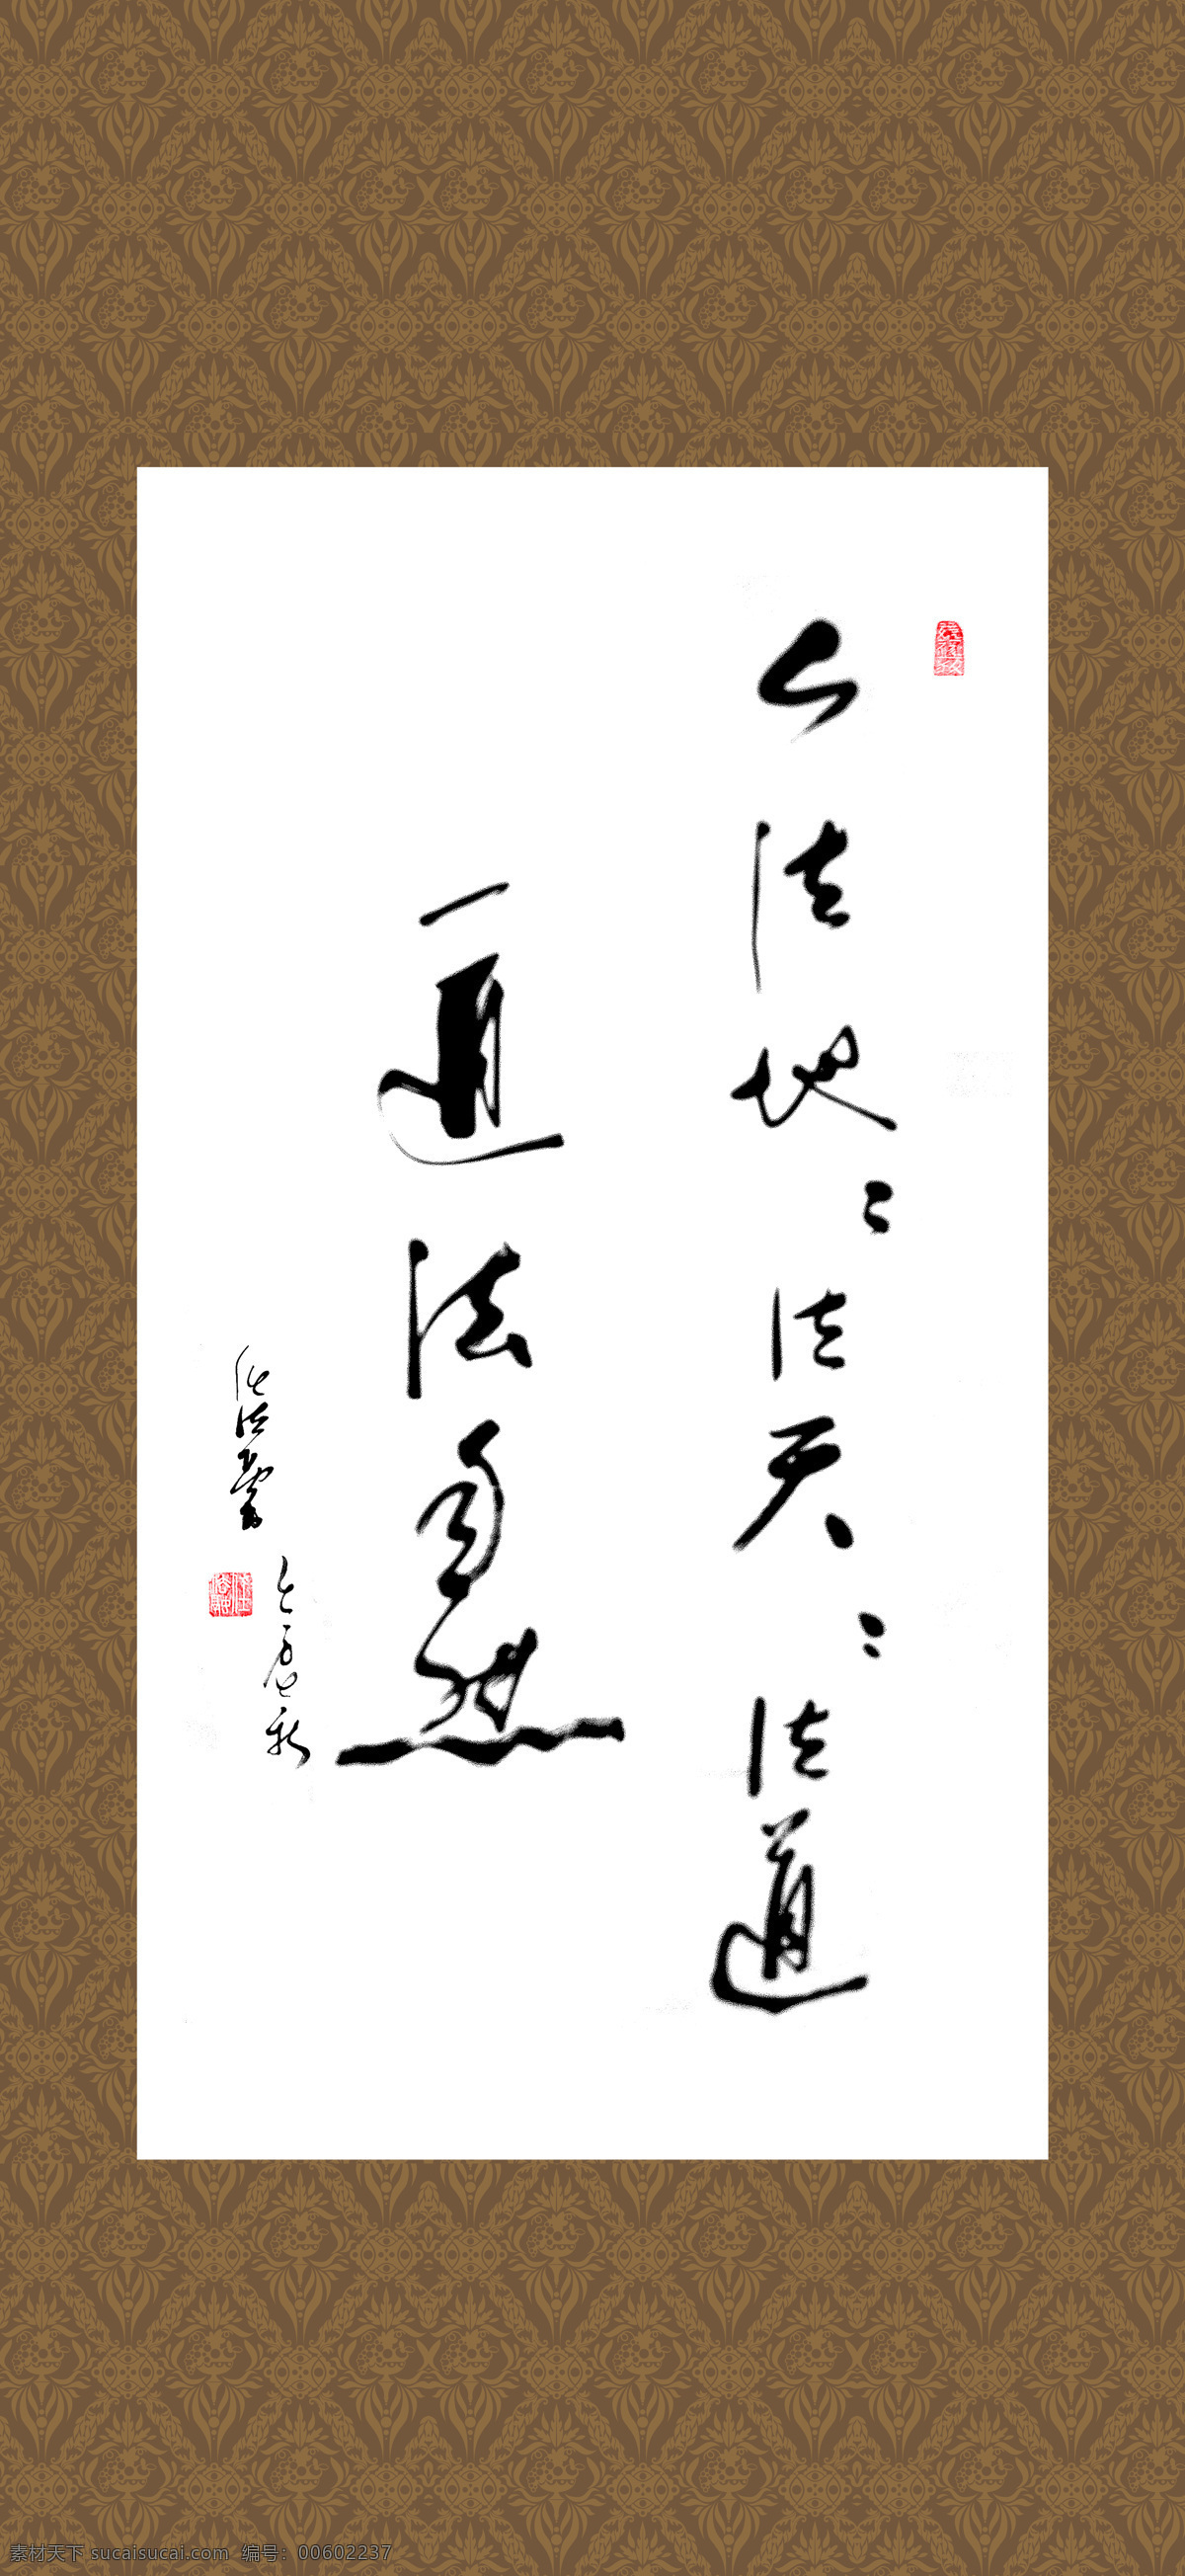 中国书法挂画 中国传统挂画 中国 古典 挂画 传统 国画 书法 传统文化 文化艺术